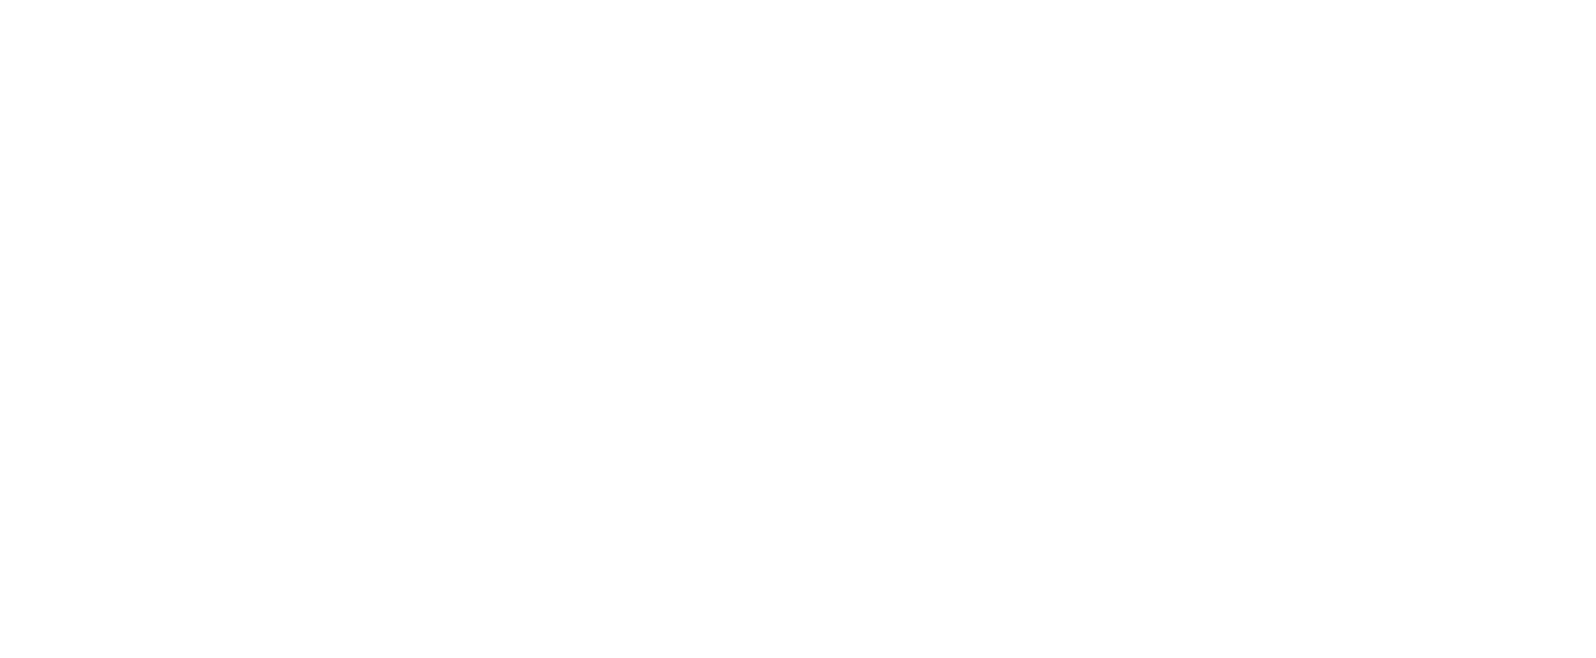 R&M_logo_white